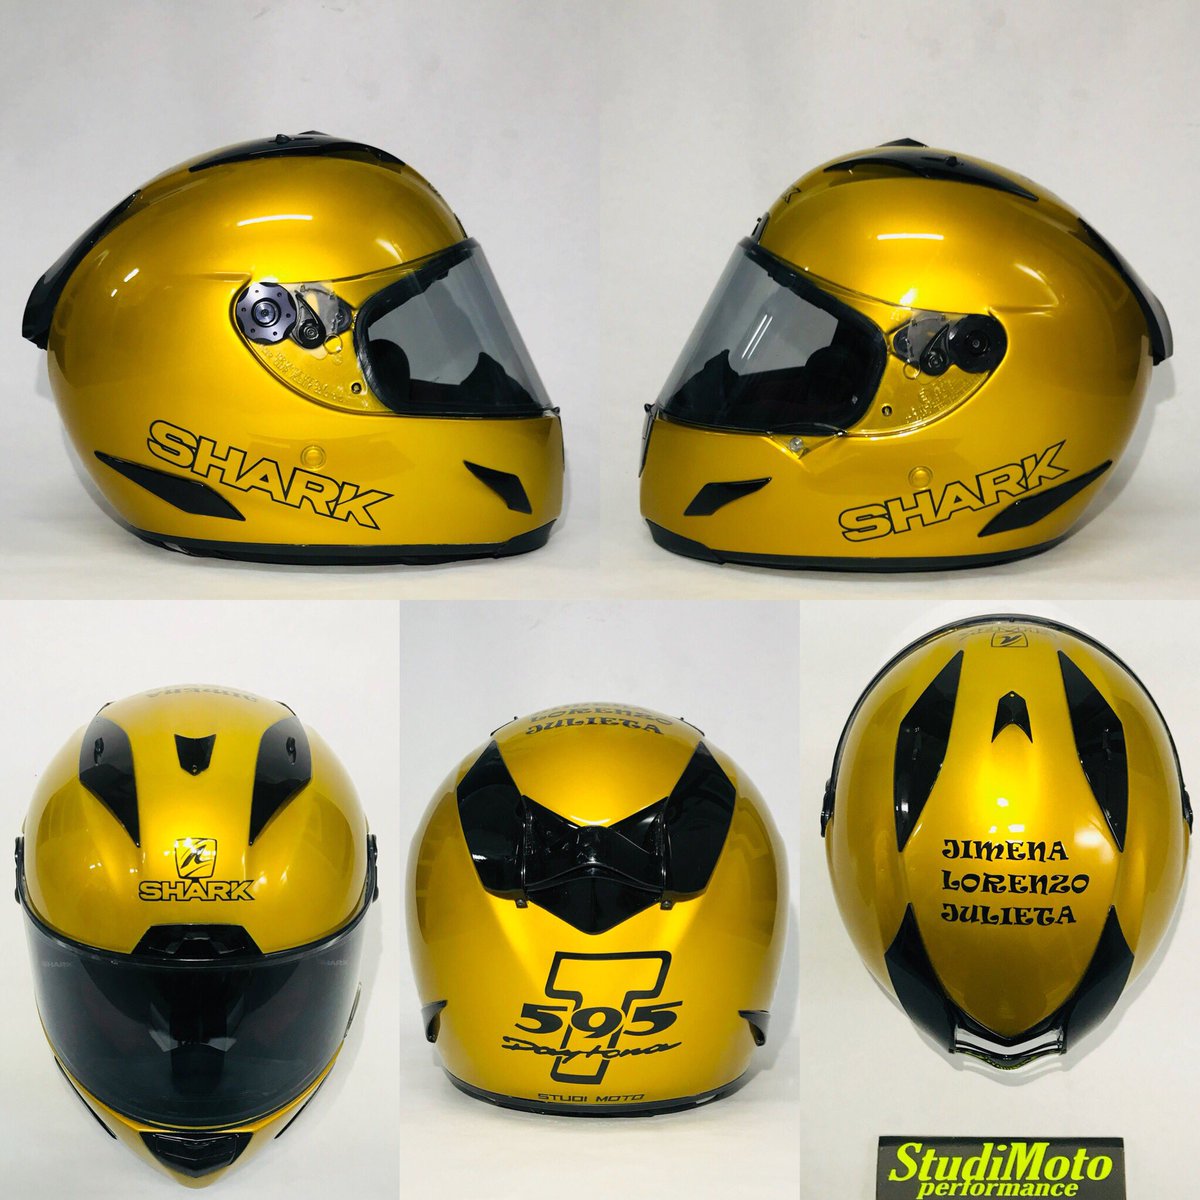 Studi Moto Pintura on Twitter: "Reparación pintado de casco Shark Race-R El Sr. Cliente ya tiene el casco que deseaba a color igual que su moto Triumph T595.